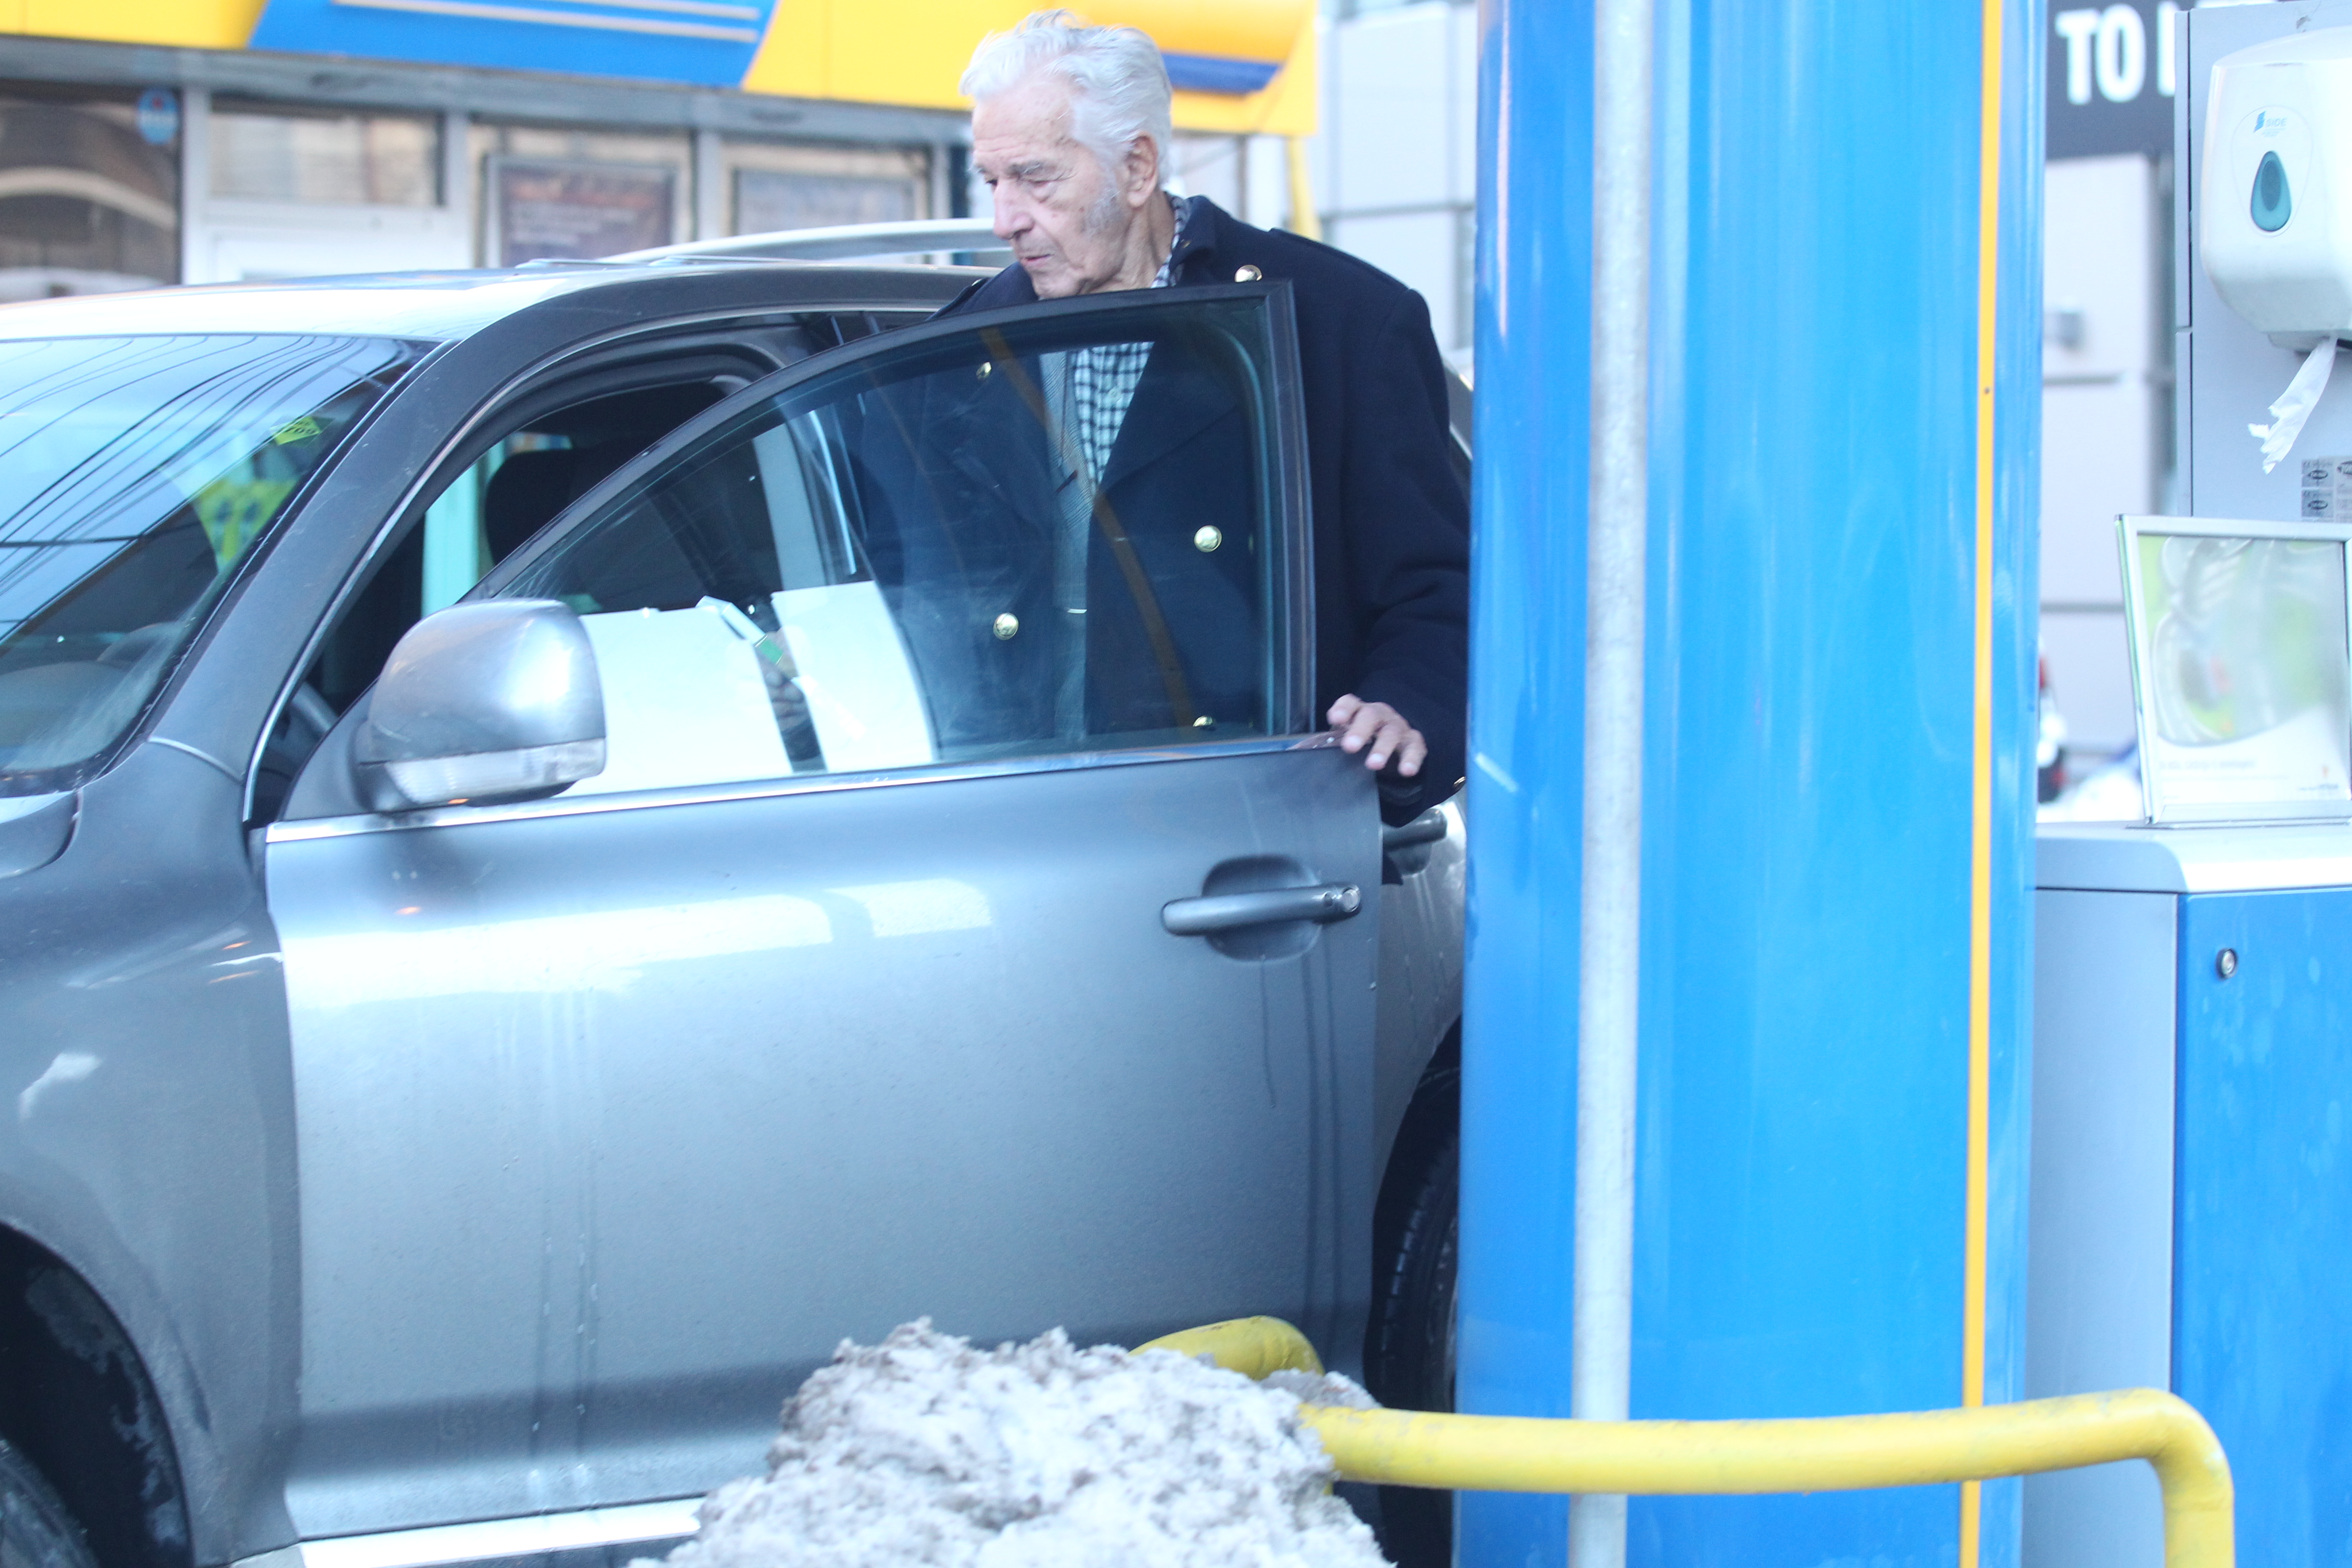 Ultimele imagini cu Sergiu Nicolaescu în viaţă: conducea şi îl cinstea pe băiatul de la benzinărie!